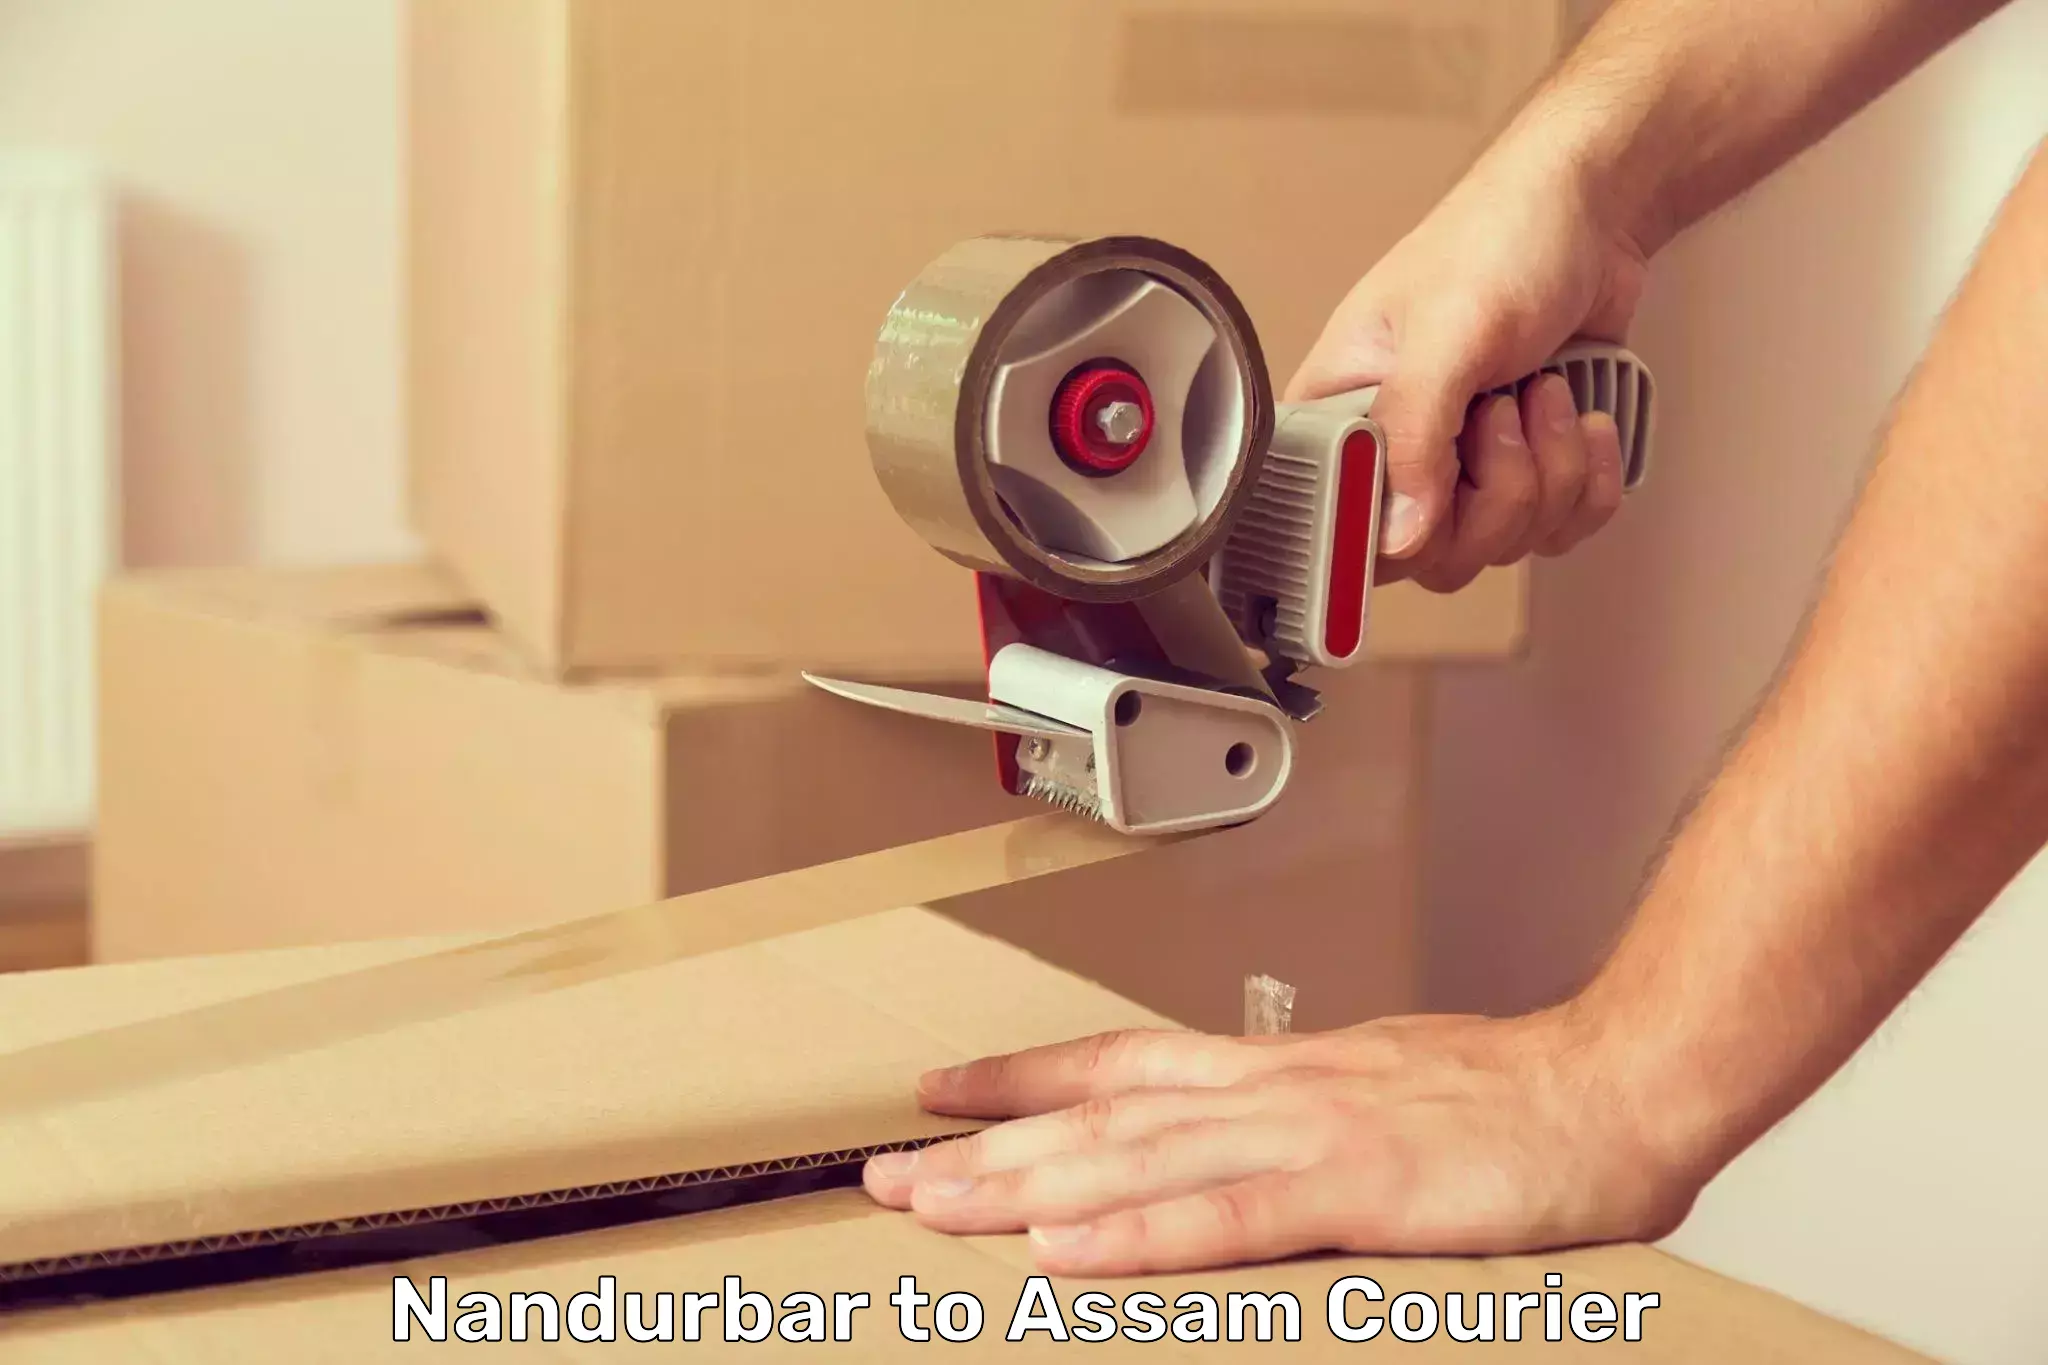 24/7 courier service Nandurbar to Assam